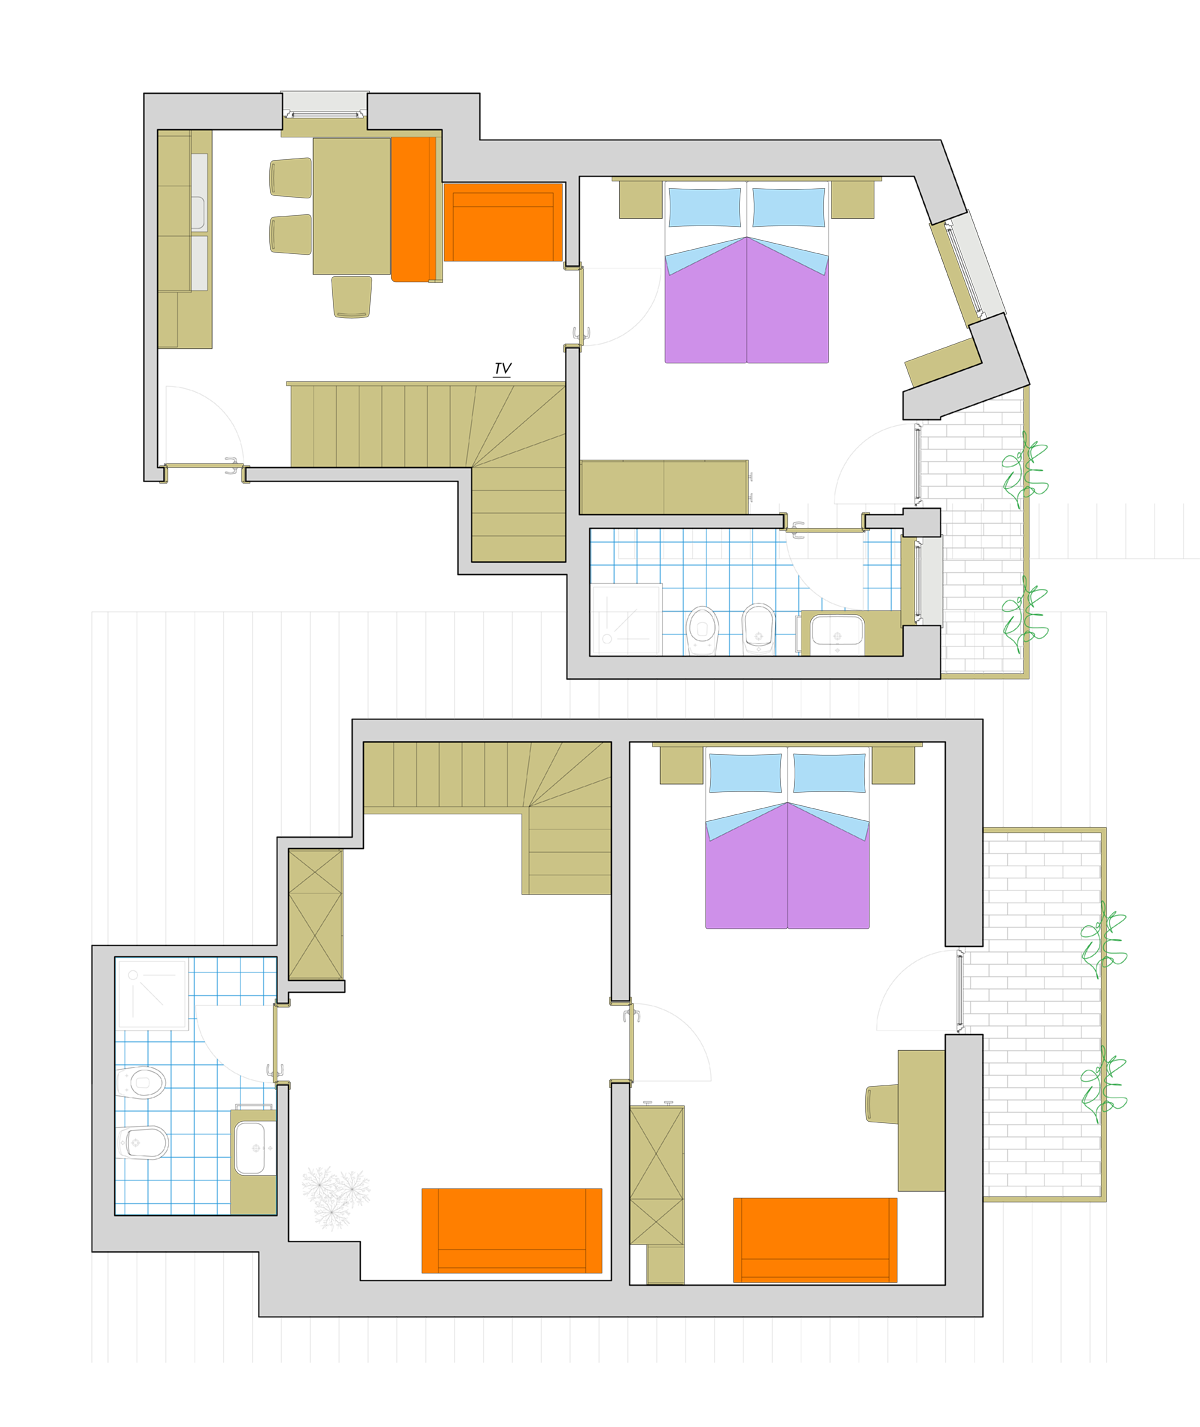 Apartament A3